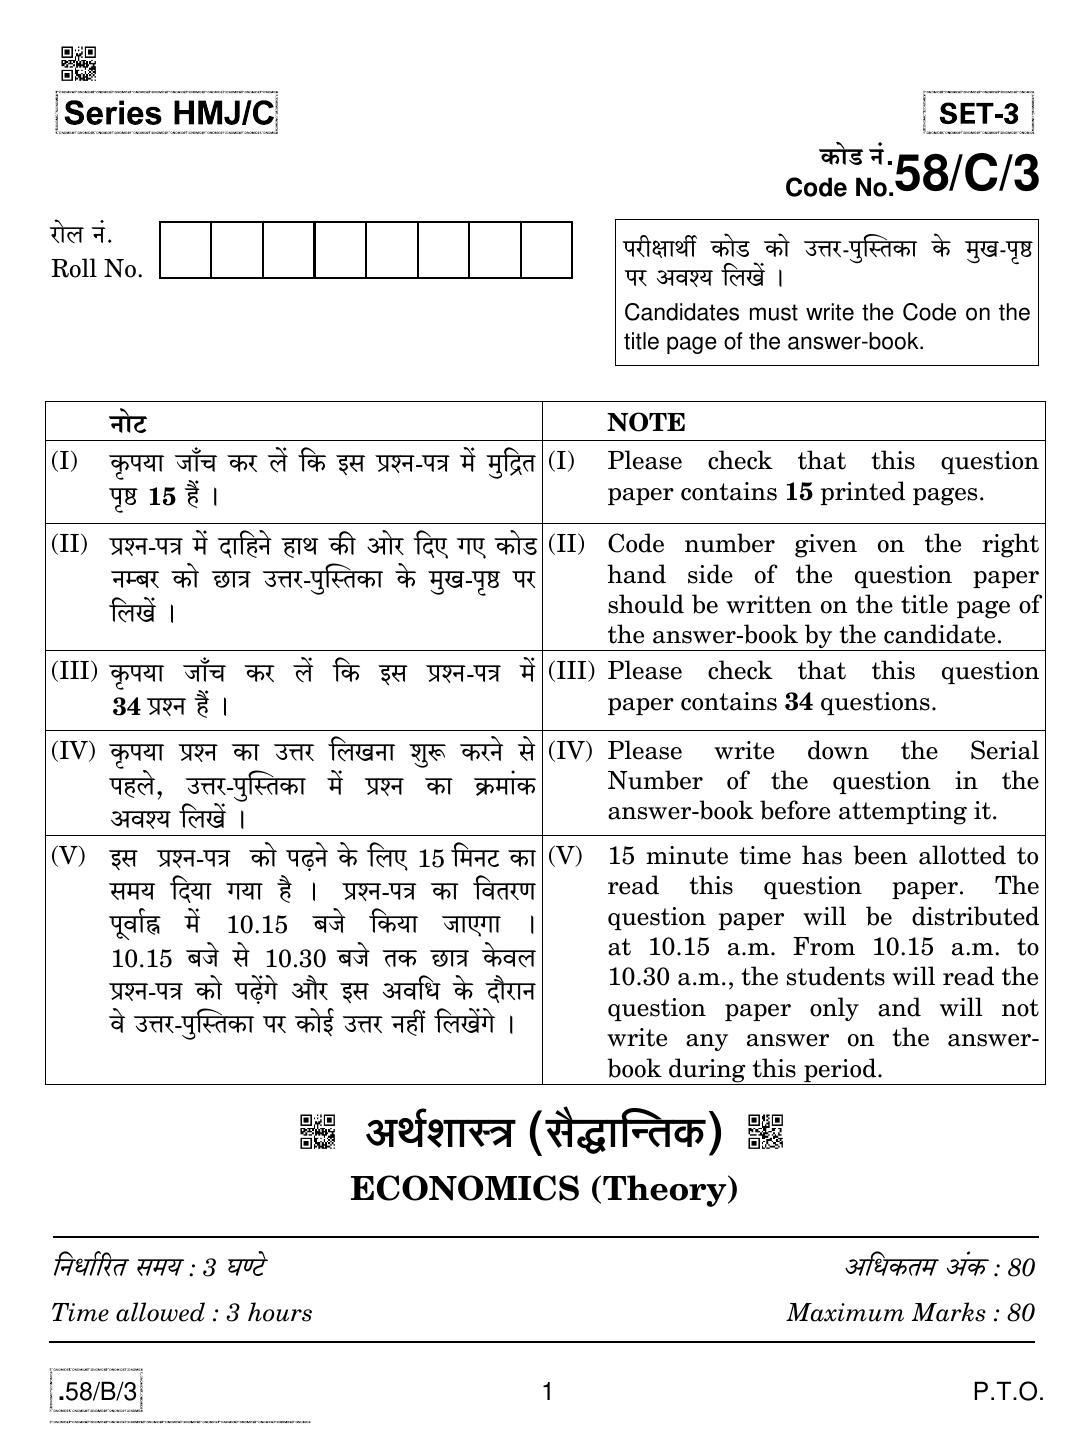 CBSE Class 12 58-C-3 - Economics 2020 Compartment Question Paper - Page 1